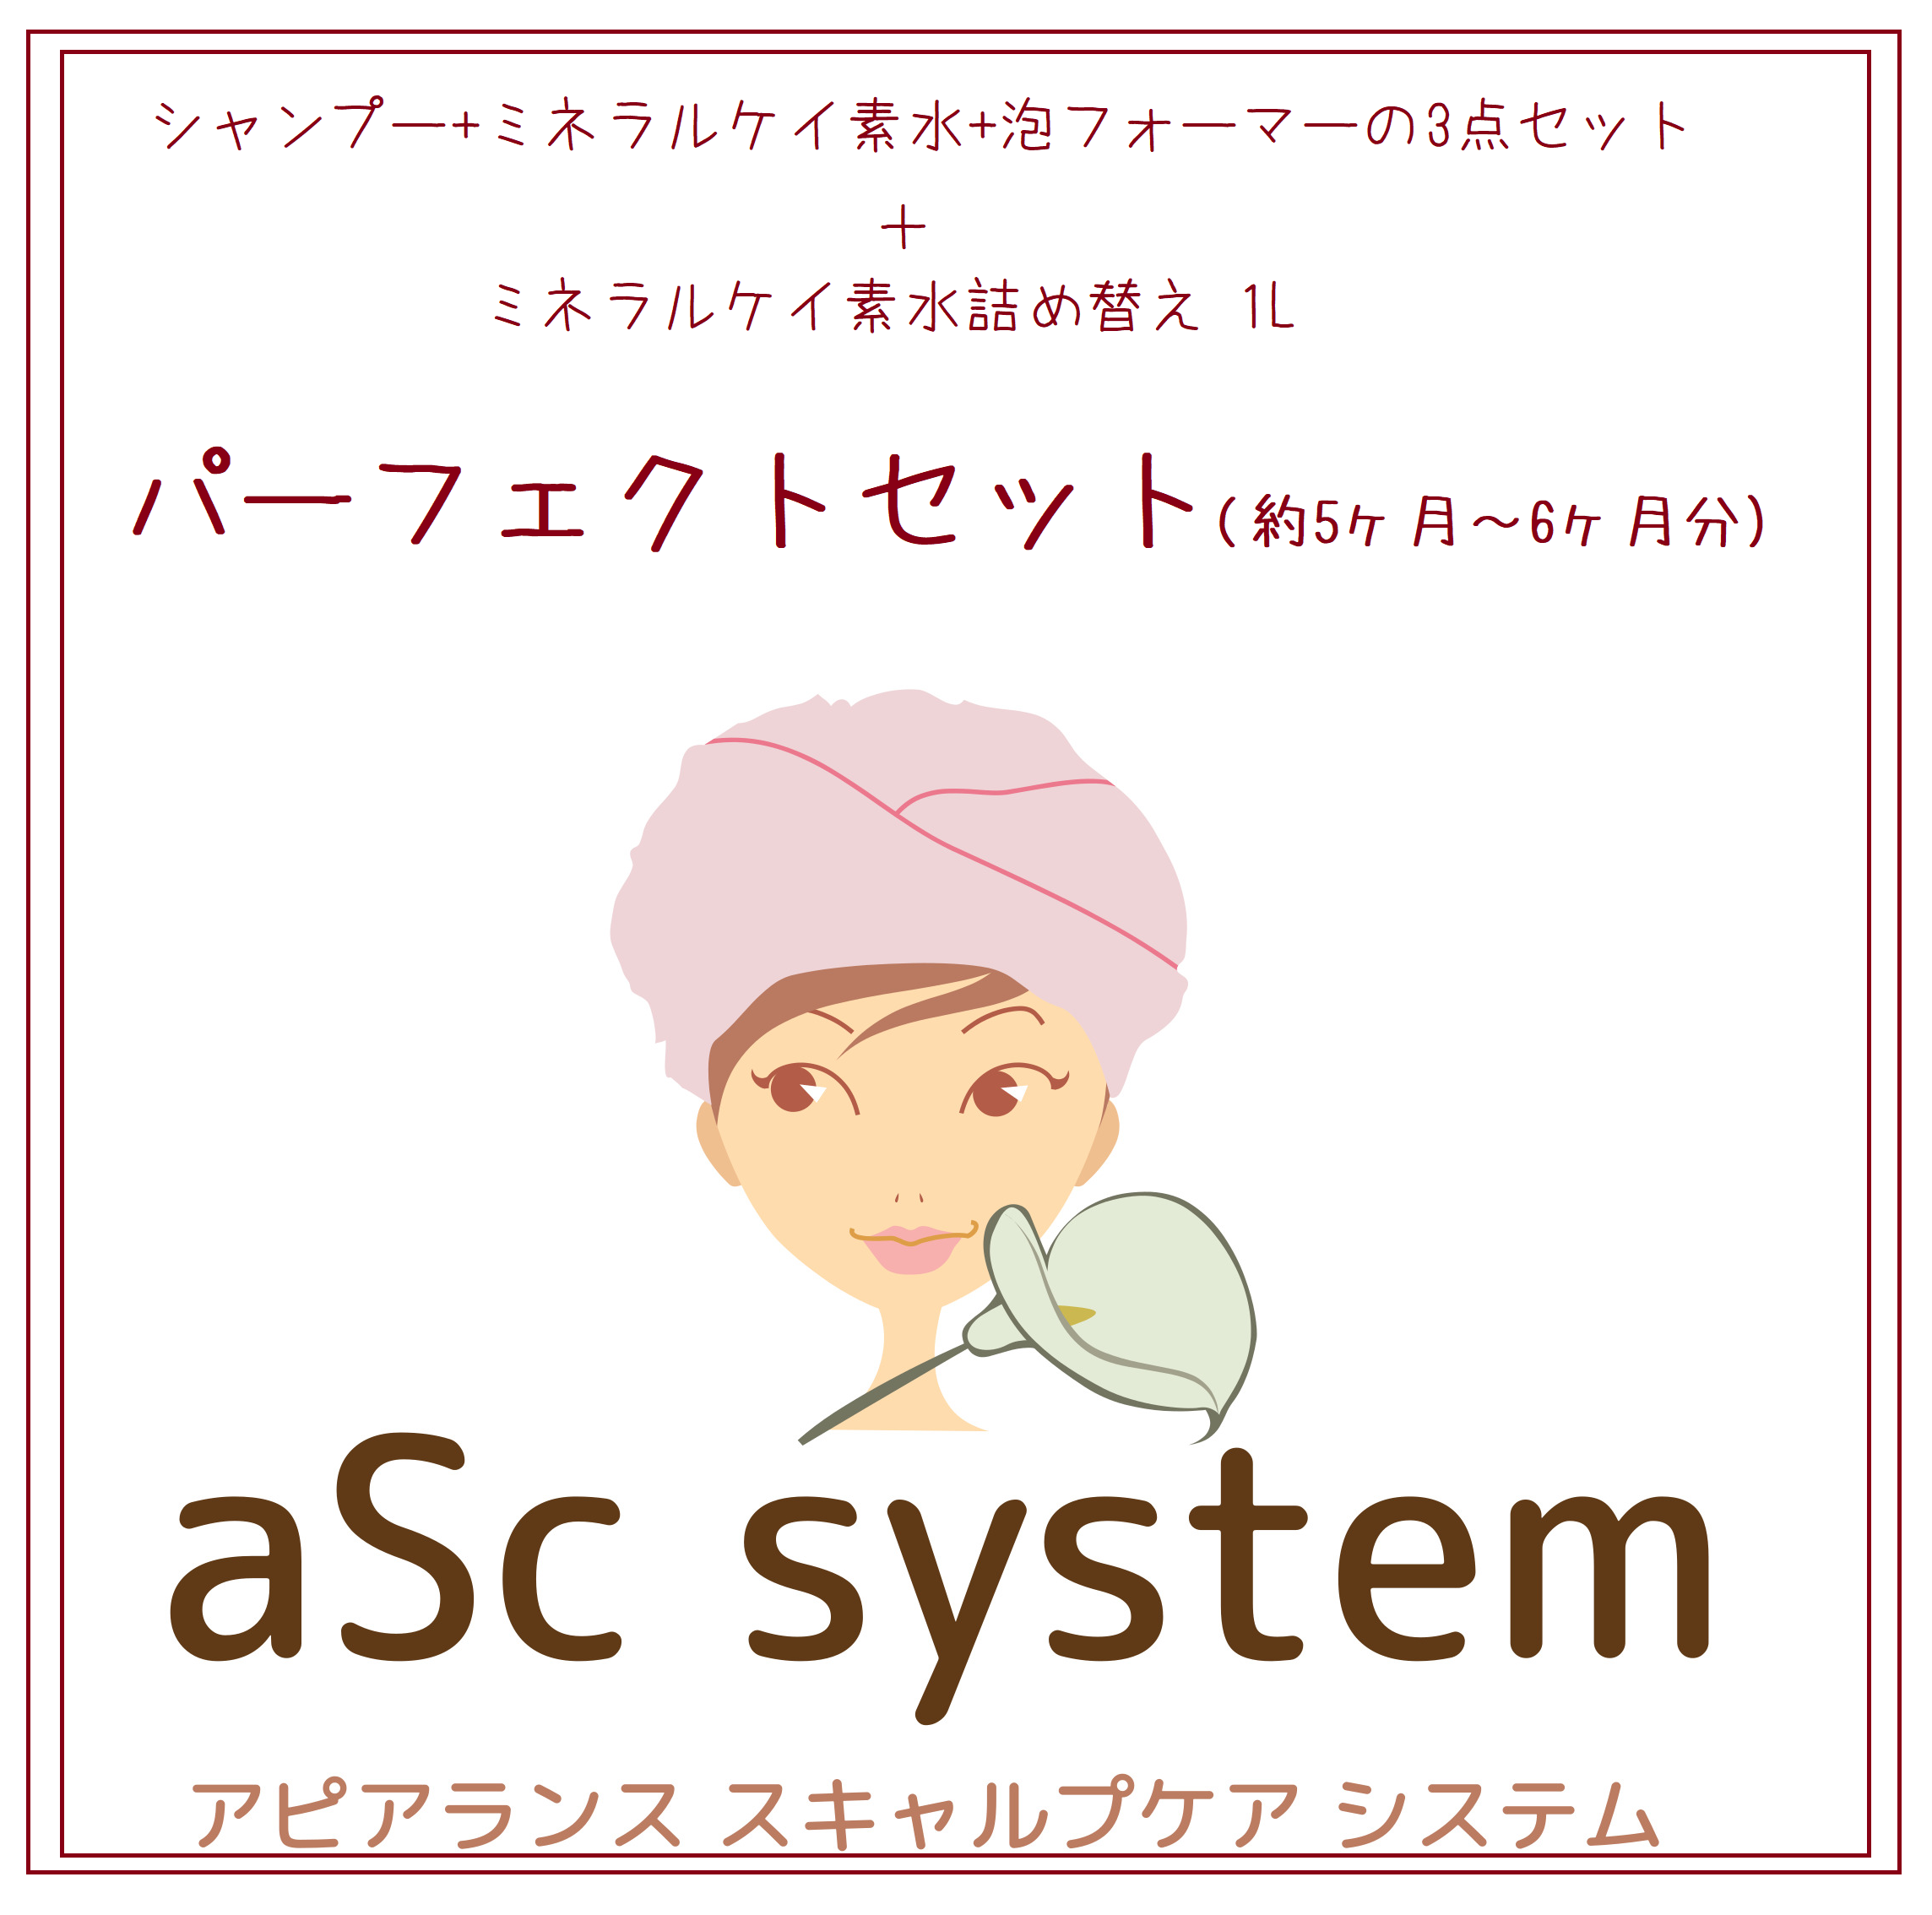 抗がん剤治療中、脱毛期に使用する「aSc system」の販売をスタートしました！